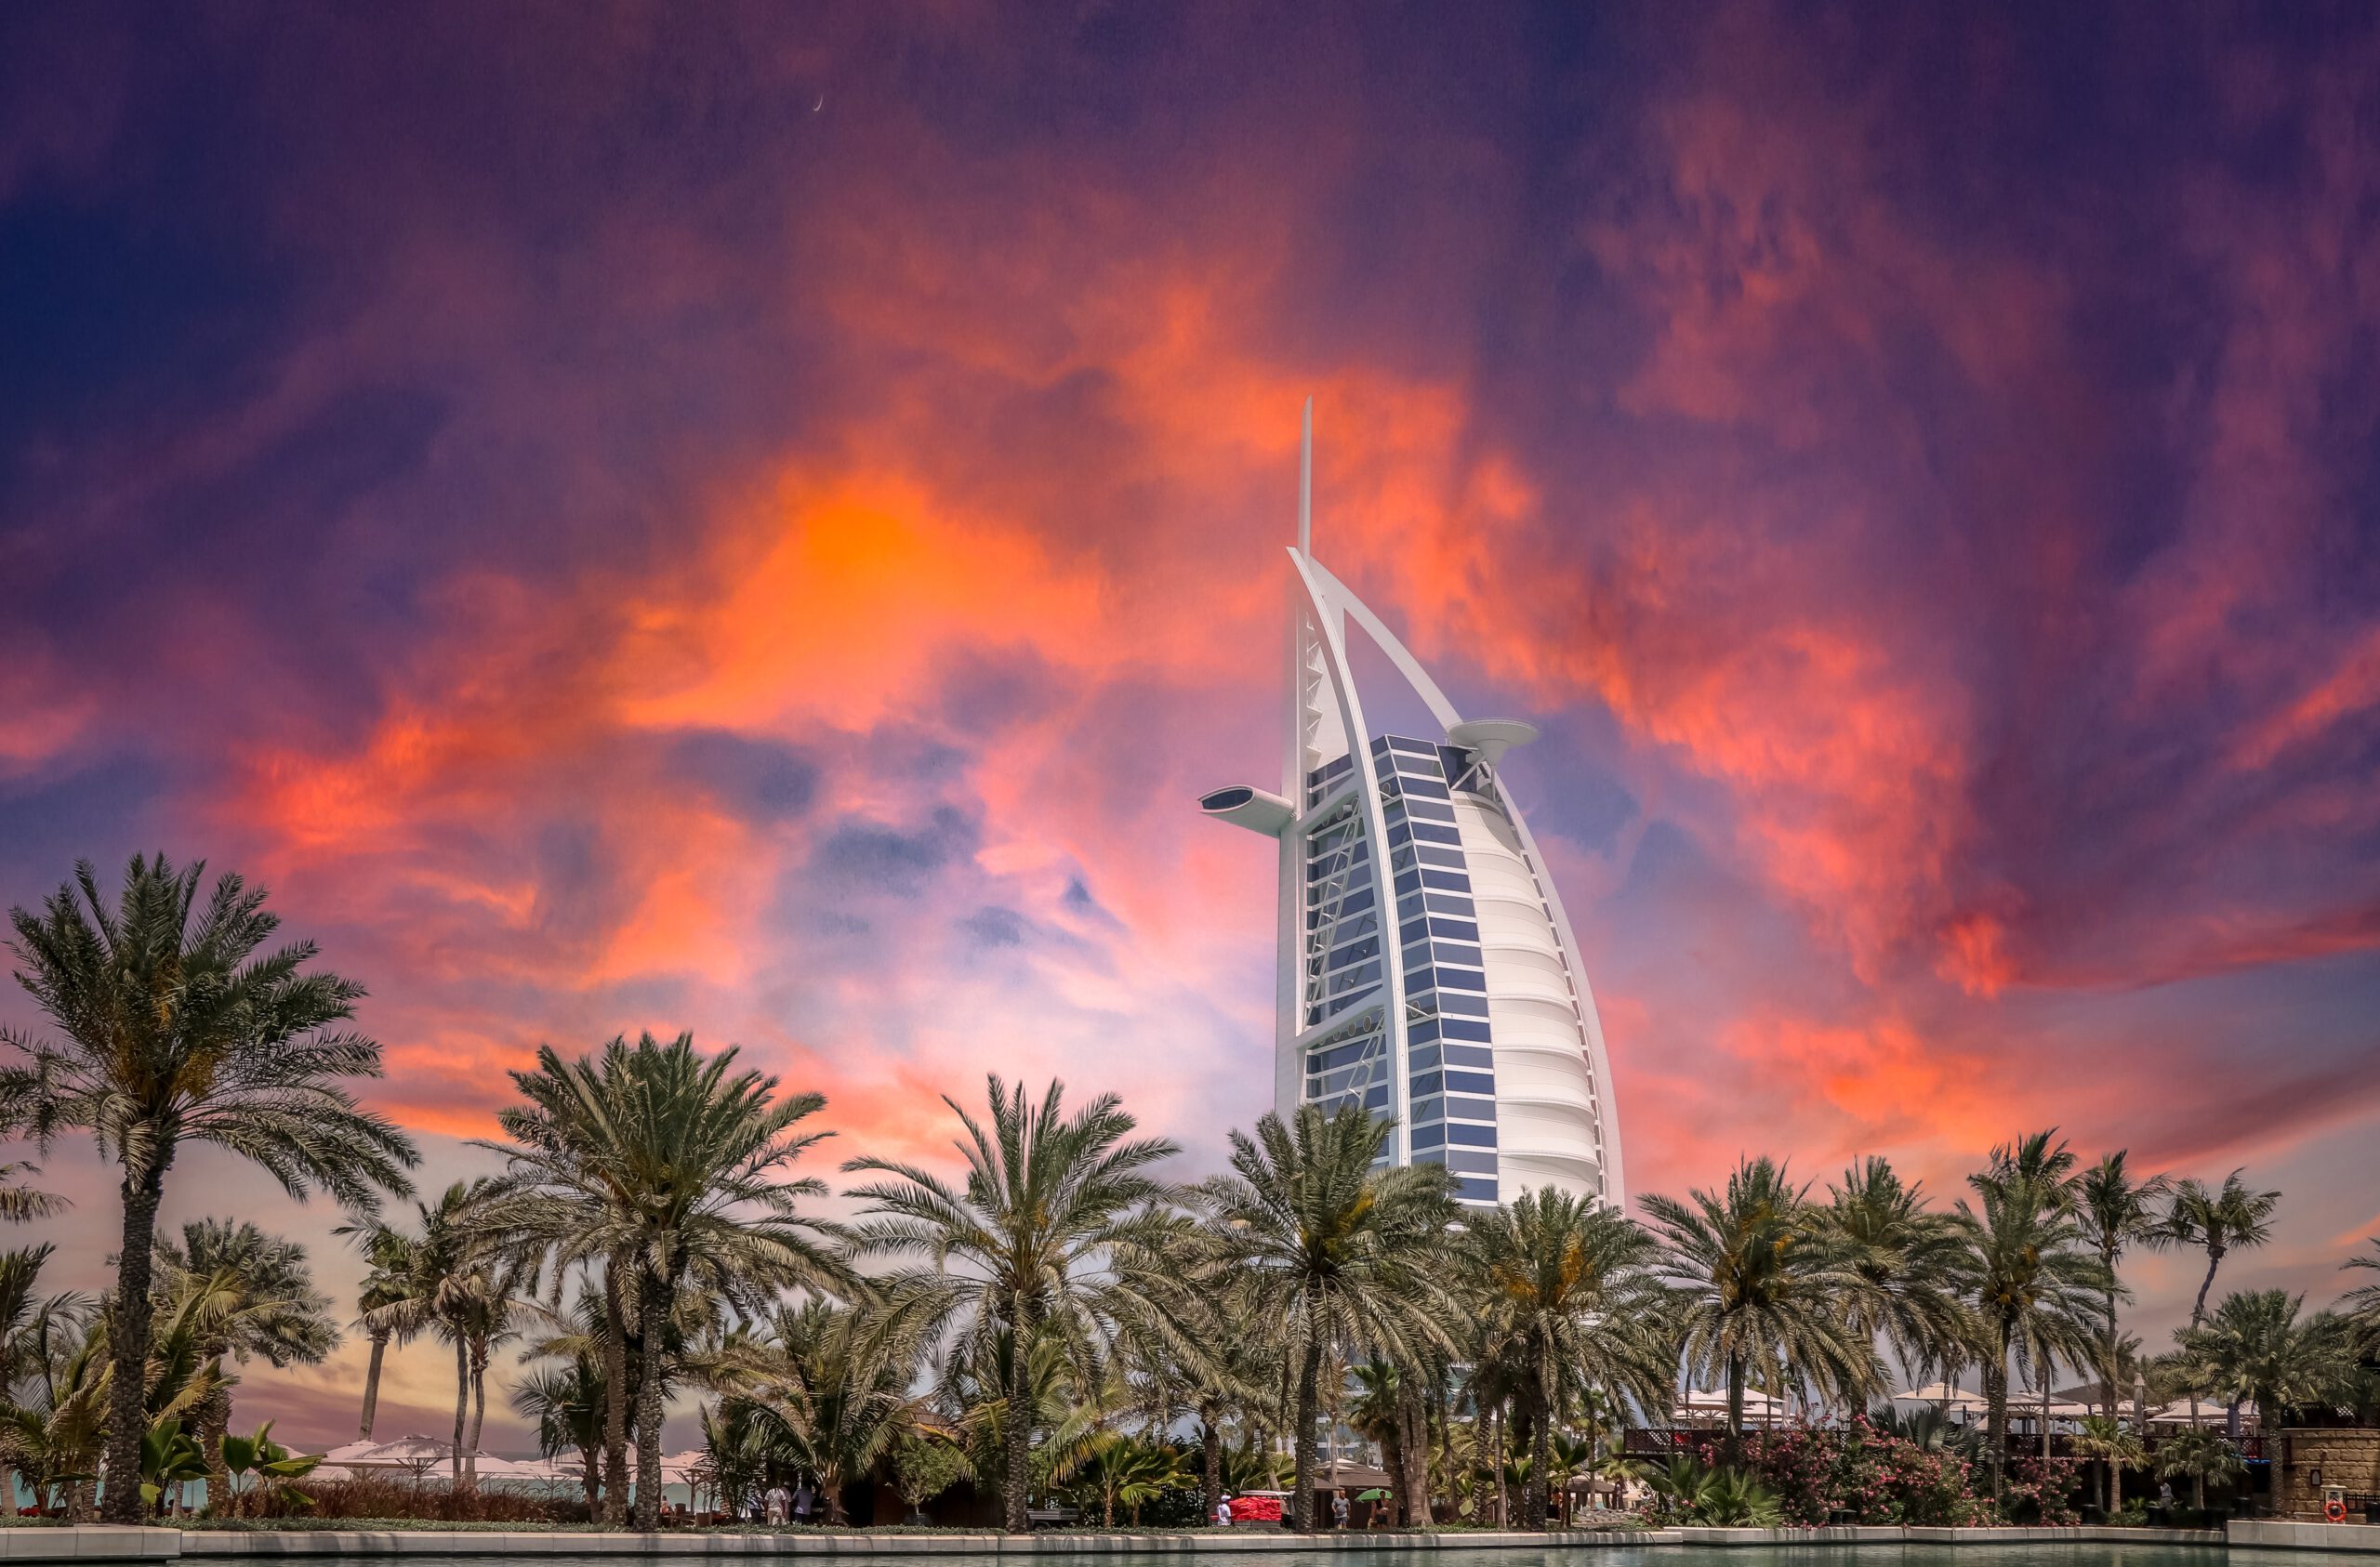 Достопримечательности в Дубае - Бурдж-эль-Араб